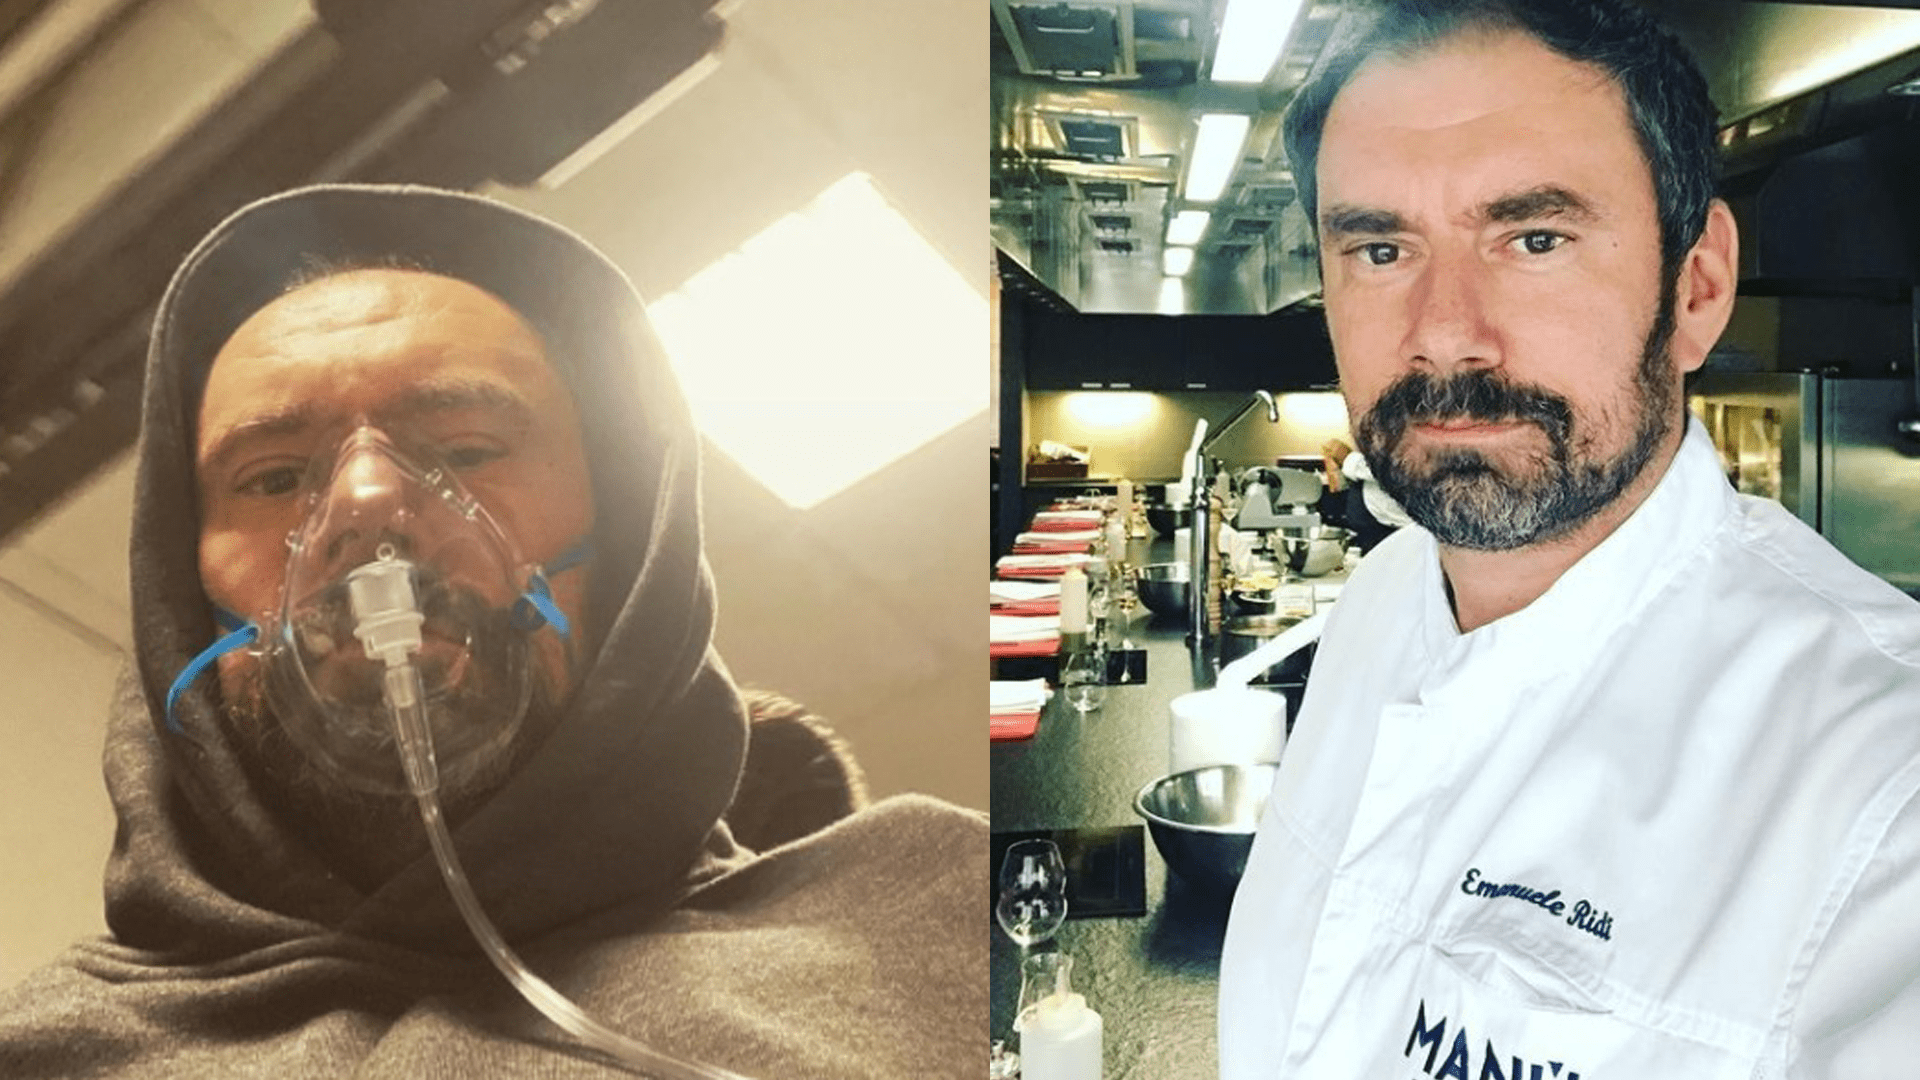 Kuchař Emanuele Ridi se léčil v nemocnici kvůli covidu 11 dní.